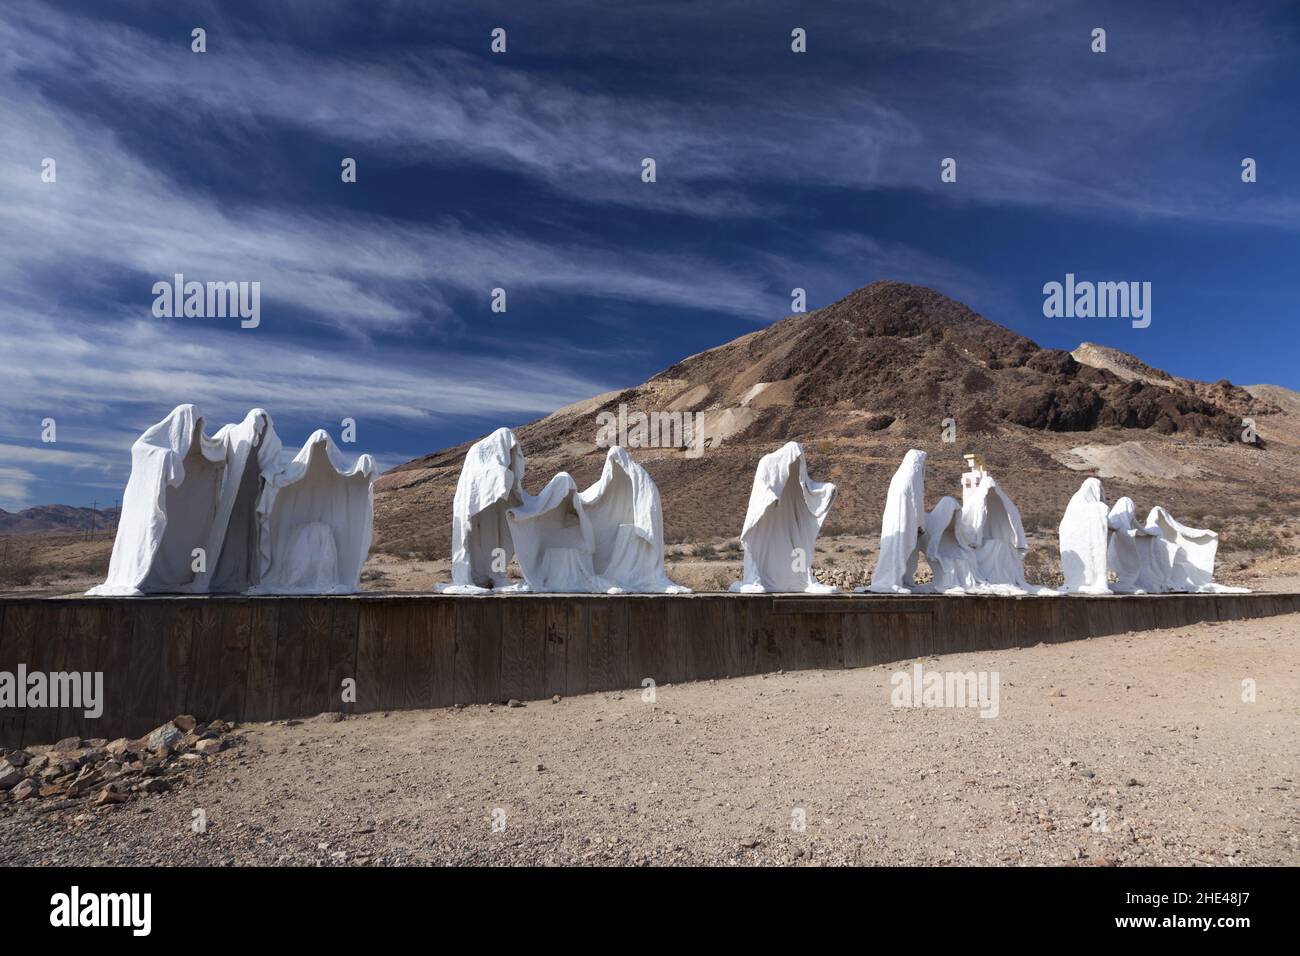 The Last Cenpper, Row of White Ghost Town Sculptures. Arte pubblica dello scultore belga Albert Szukalski a Goldwell Open Air Museum Rhyolite Nevada Foto Stock